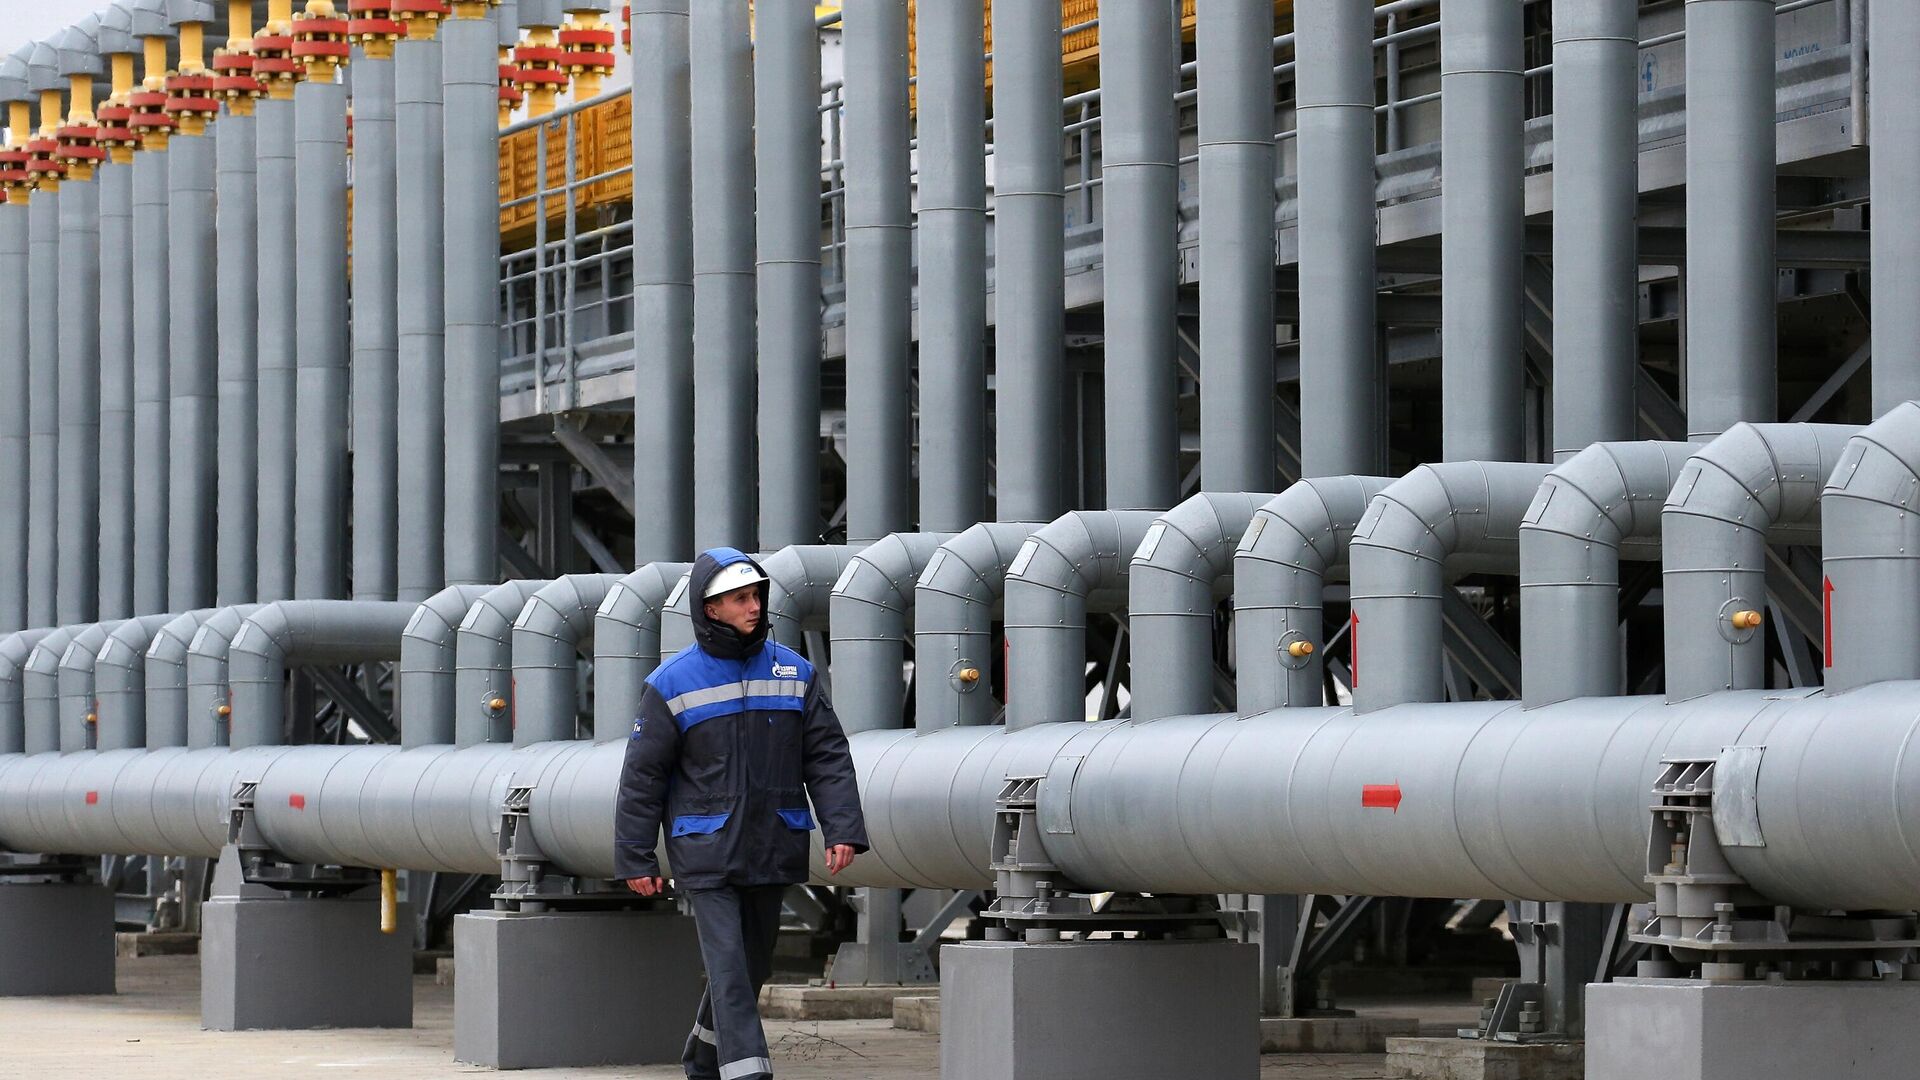 Trạm nén khí Russkaya, bộ phận của hệ thống đường ống dẫn khí nhằm đảm bảo nguồn cung cấp khí đốt cho Dòng chảy Thổ Nhĩ Kỳ. - Sputnik Việt Nam, 1920, 20.05.2022